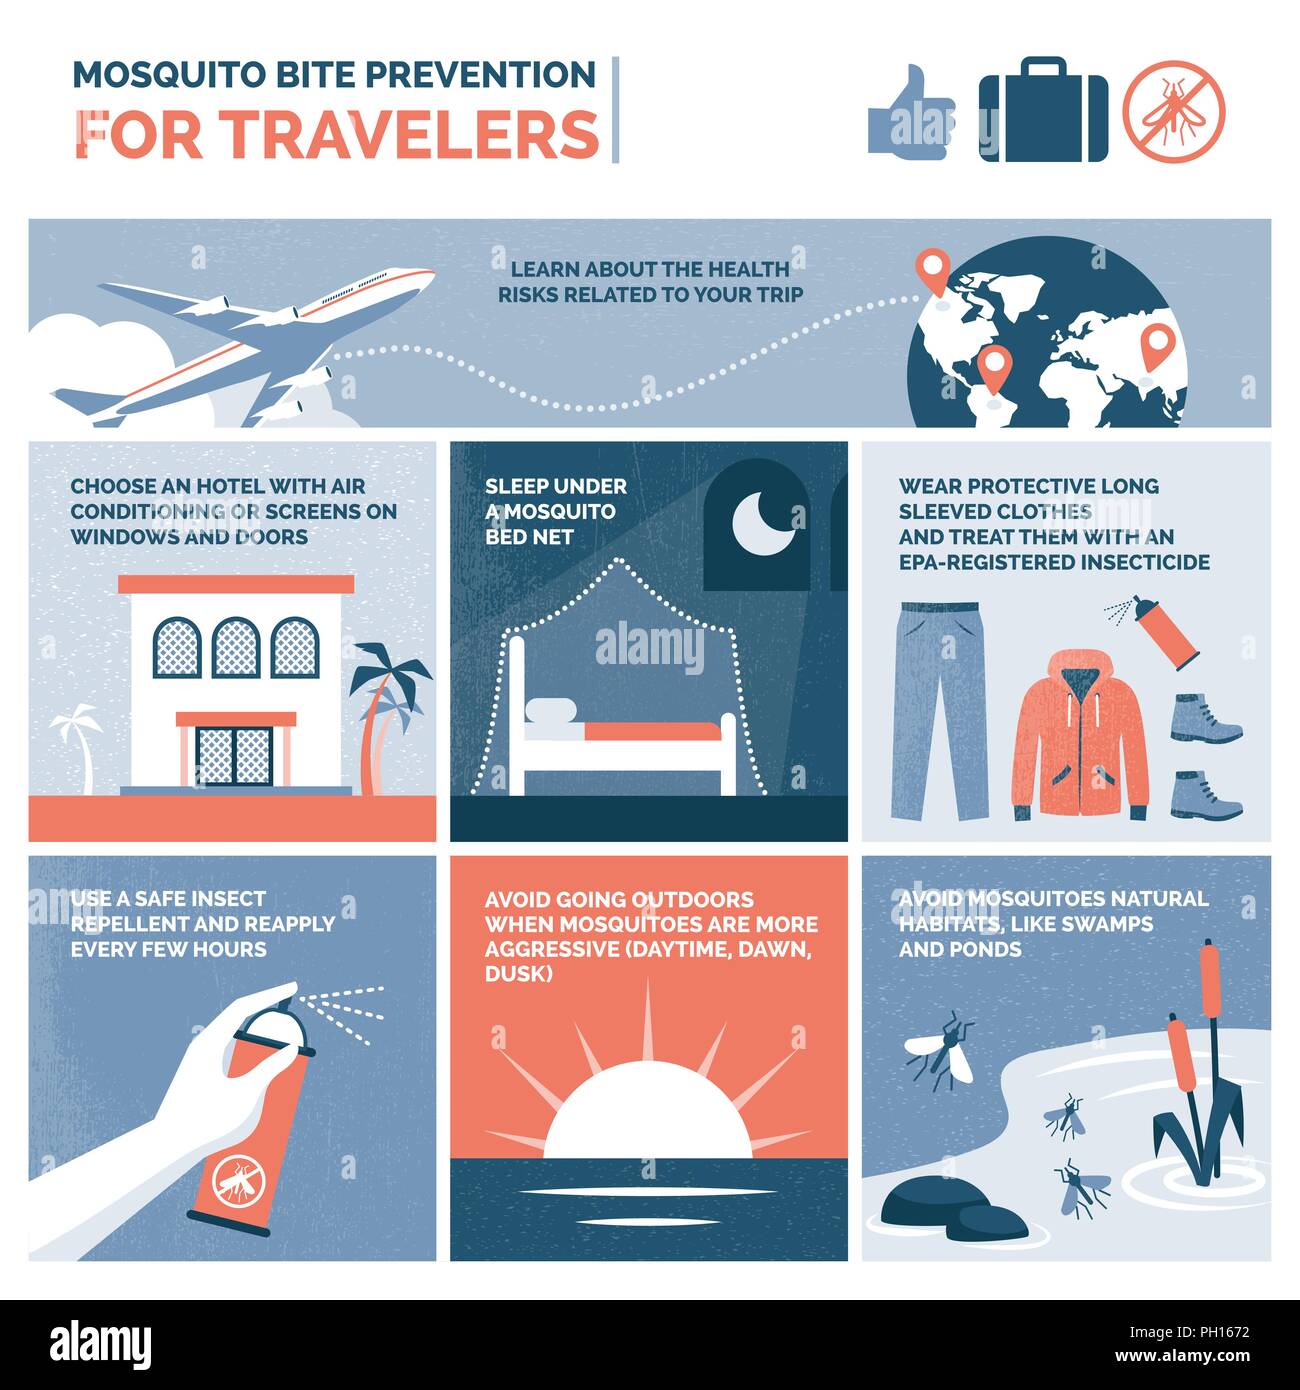 La prévention des piqûres de conseils pour les voyageurs, vector infographic Illustration de Vecteur